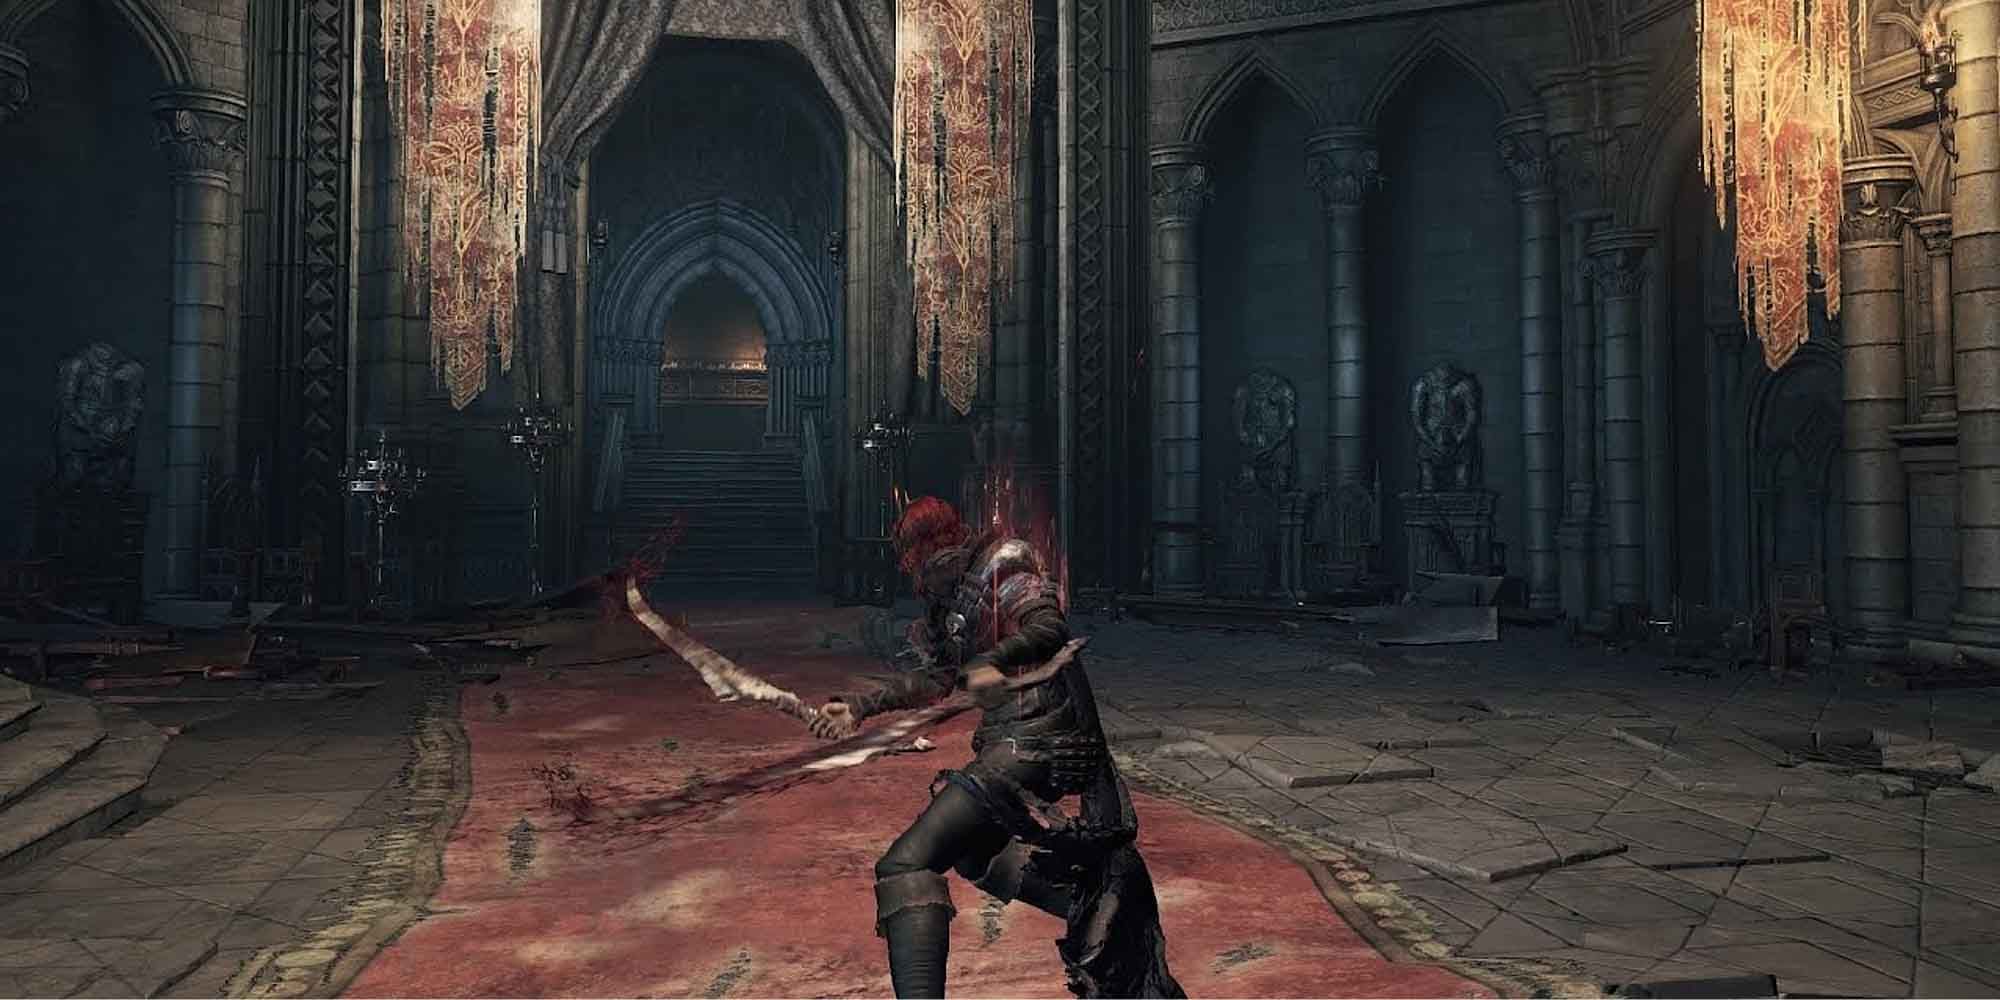 The Bleed Build in Dark Souls 3